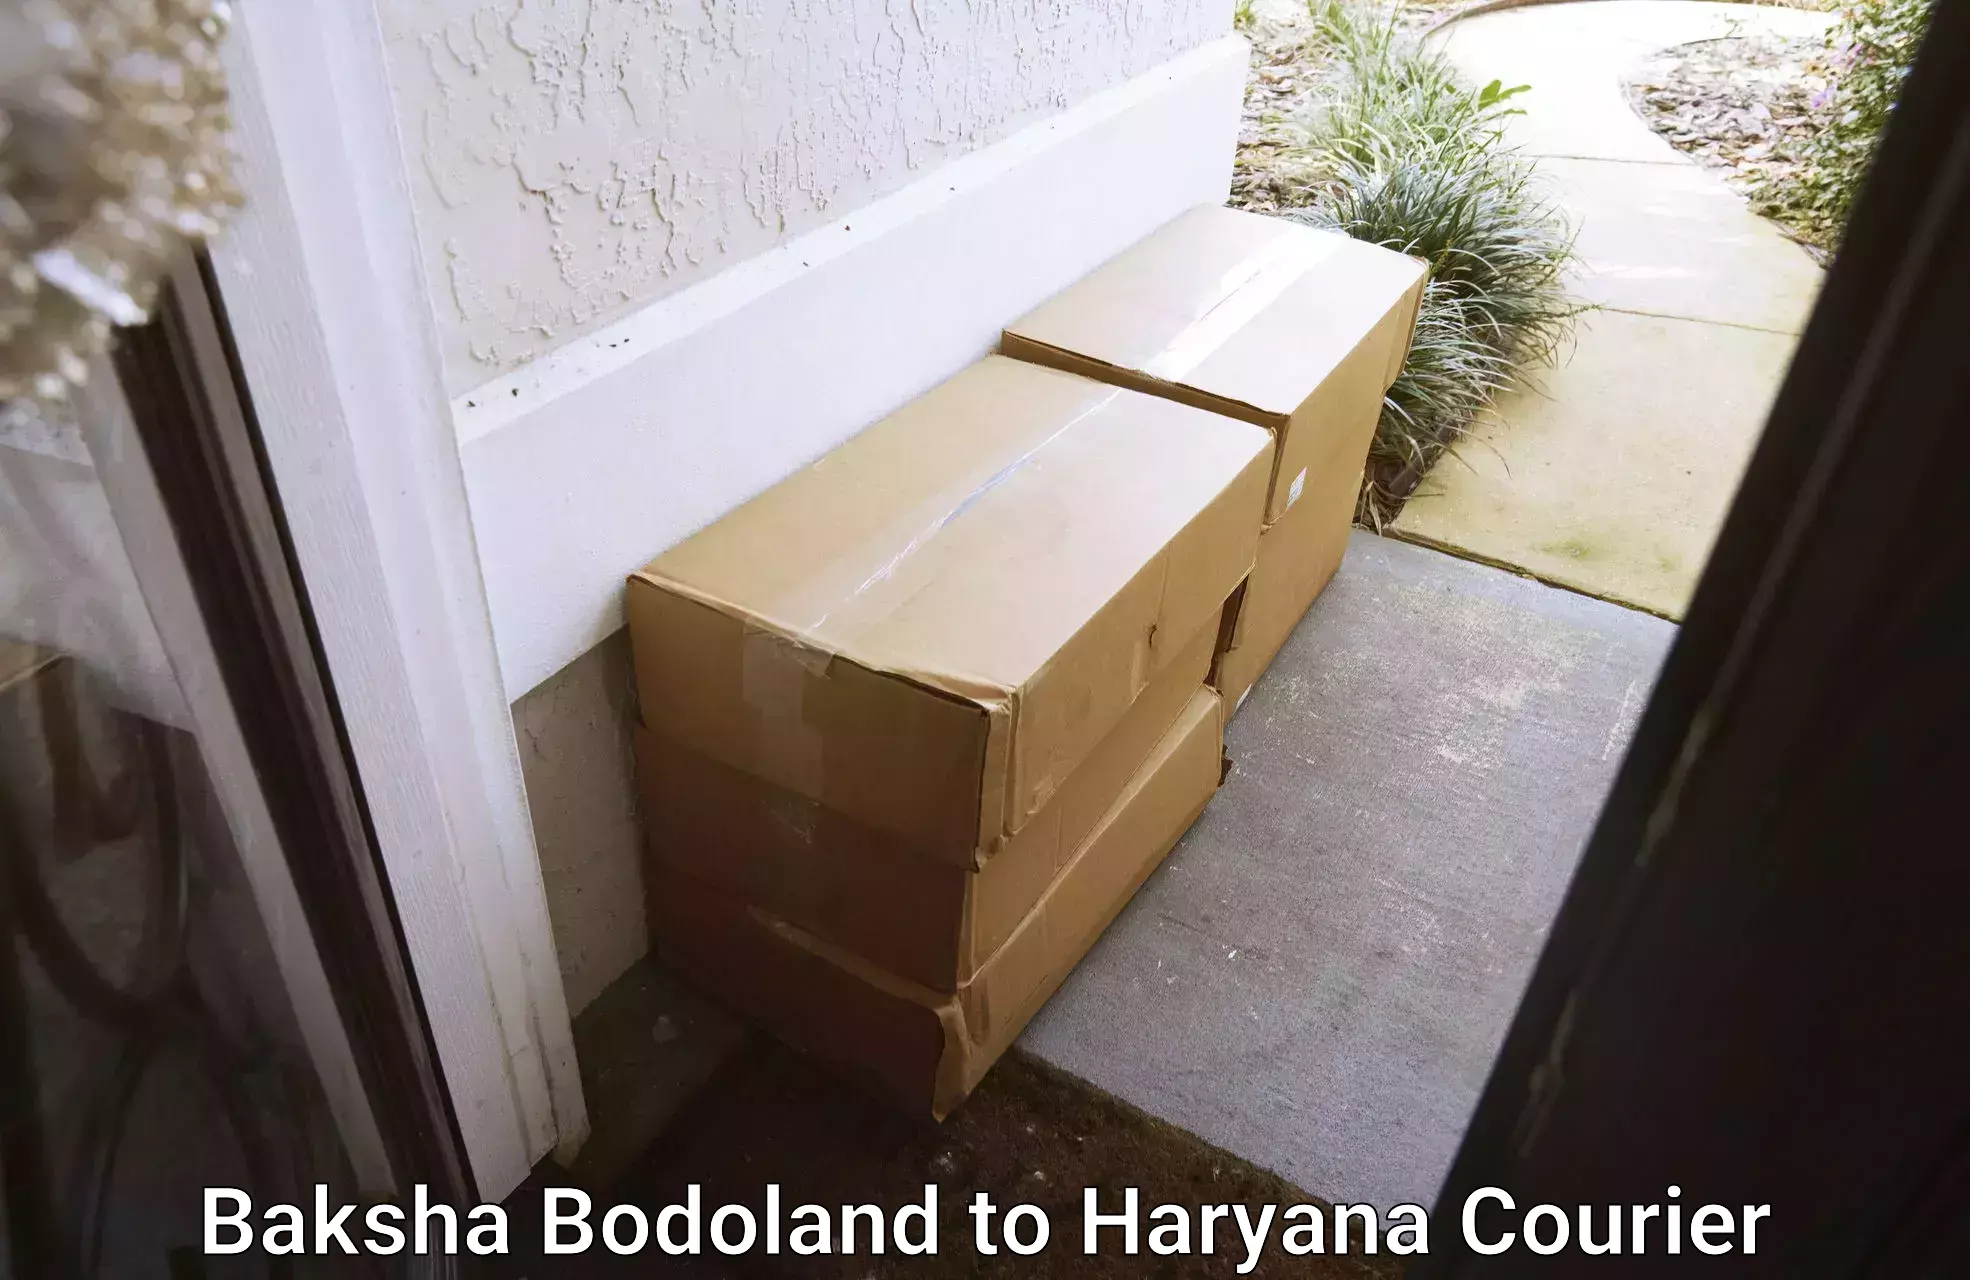 Reliable parcel services Baksha Bodoland to Haryana